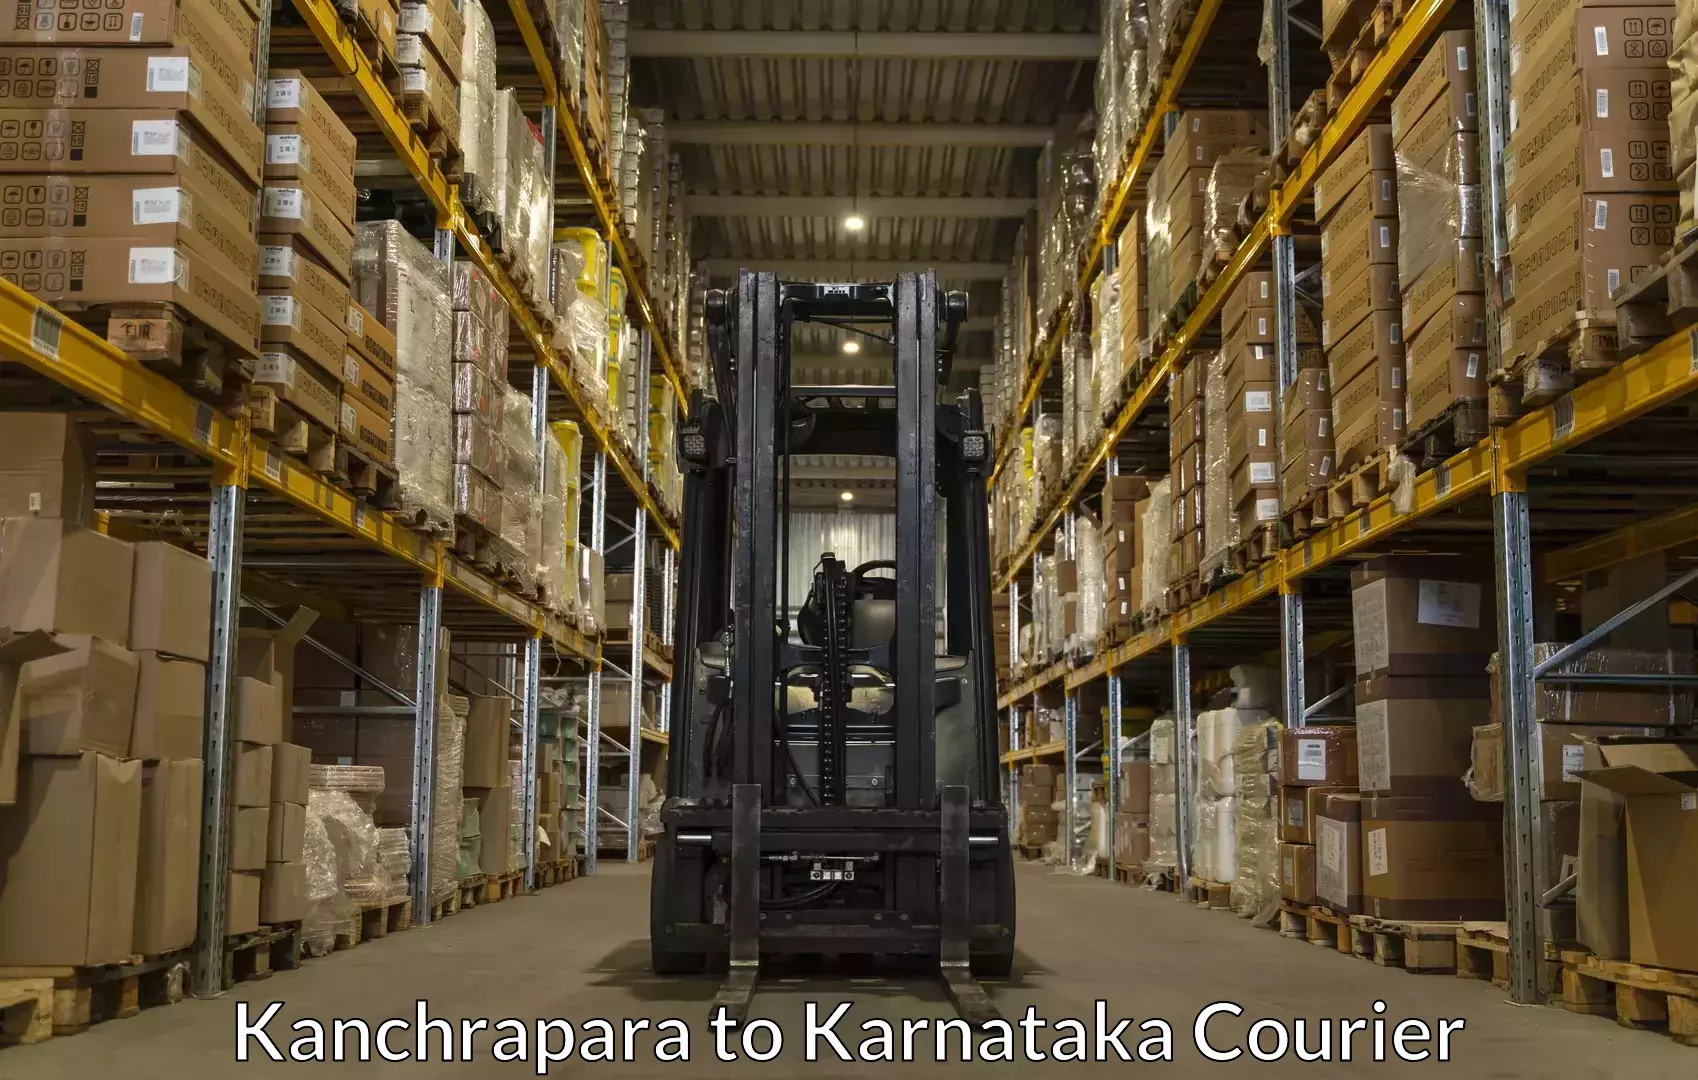 Baggage courier optimization Kanchrapara to Karnataka